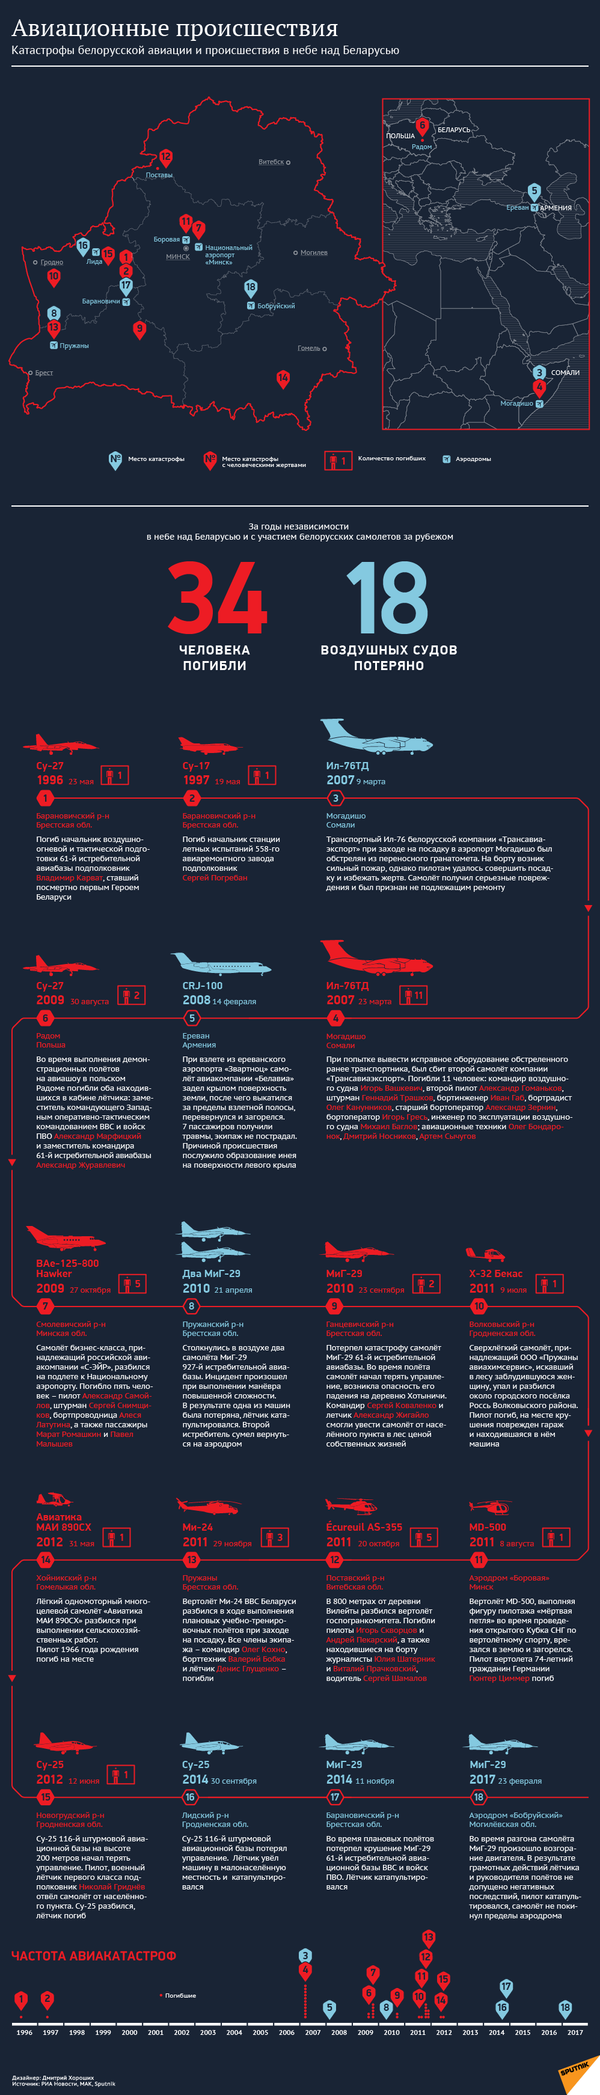 Авиационные происшествия - инфографика на sputnik.by - Sputnik Беларусь